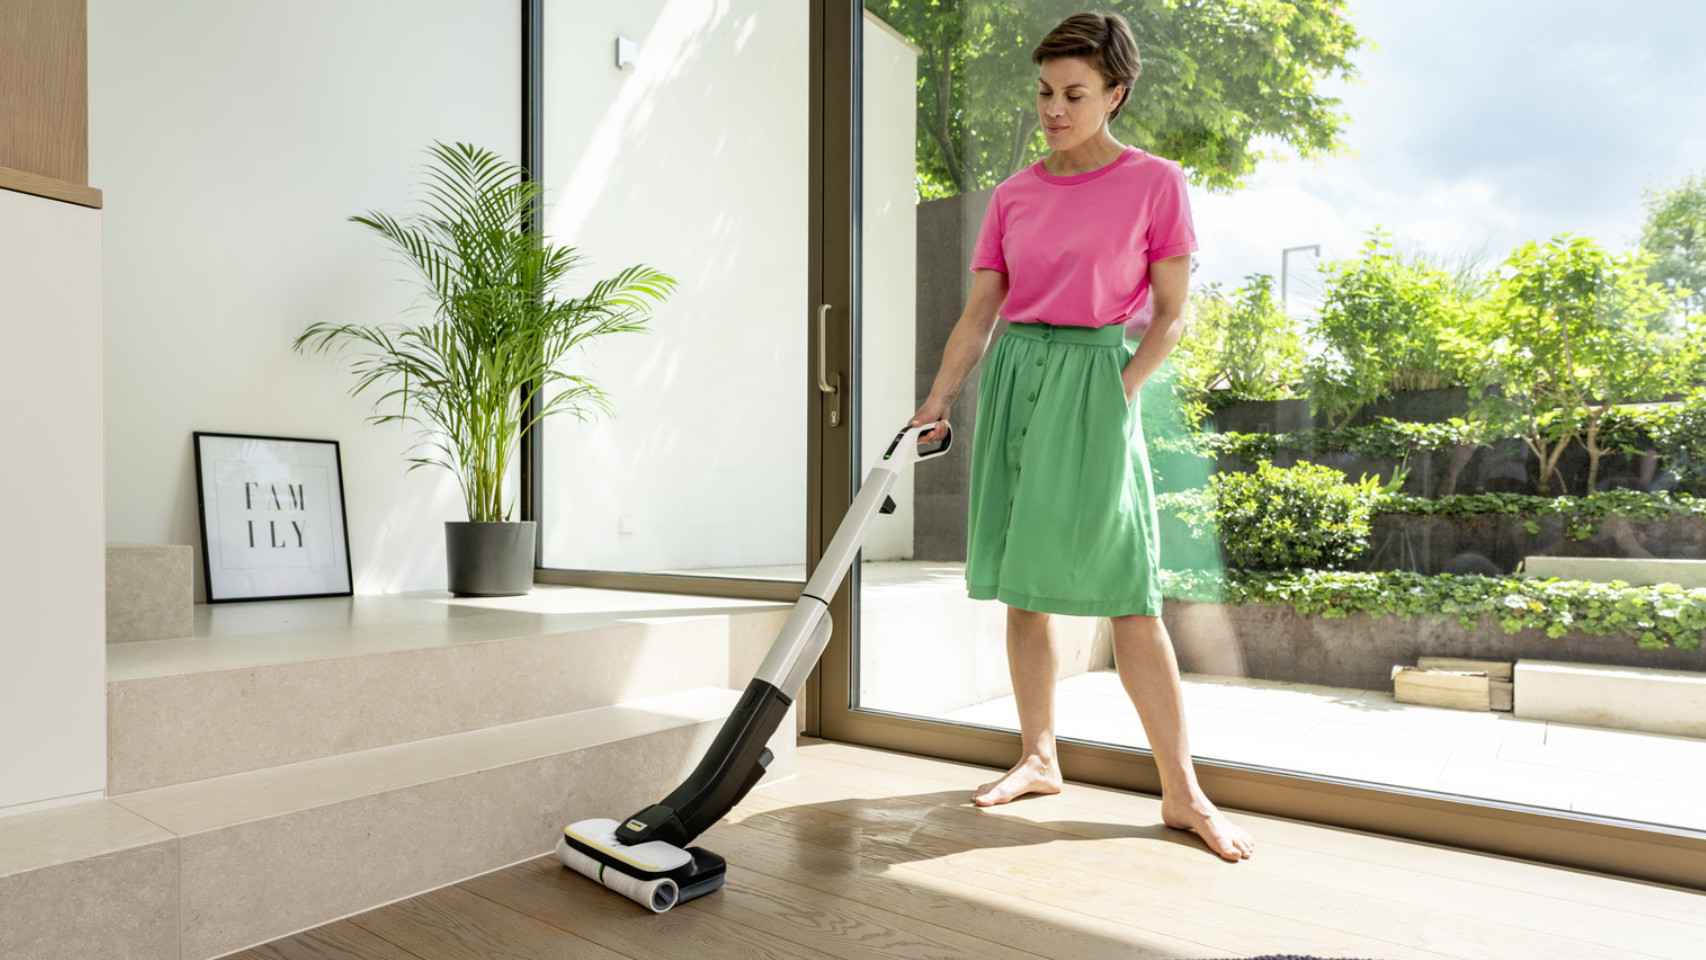 Soluciones tecnológicas para ahorrar tiempo en la limpieza del hogar